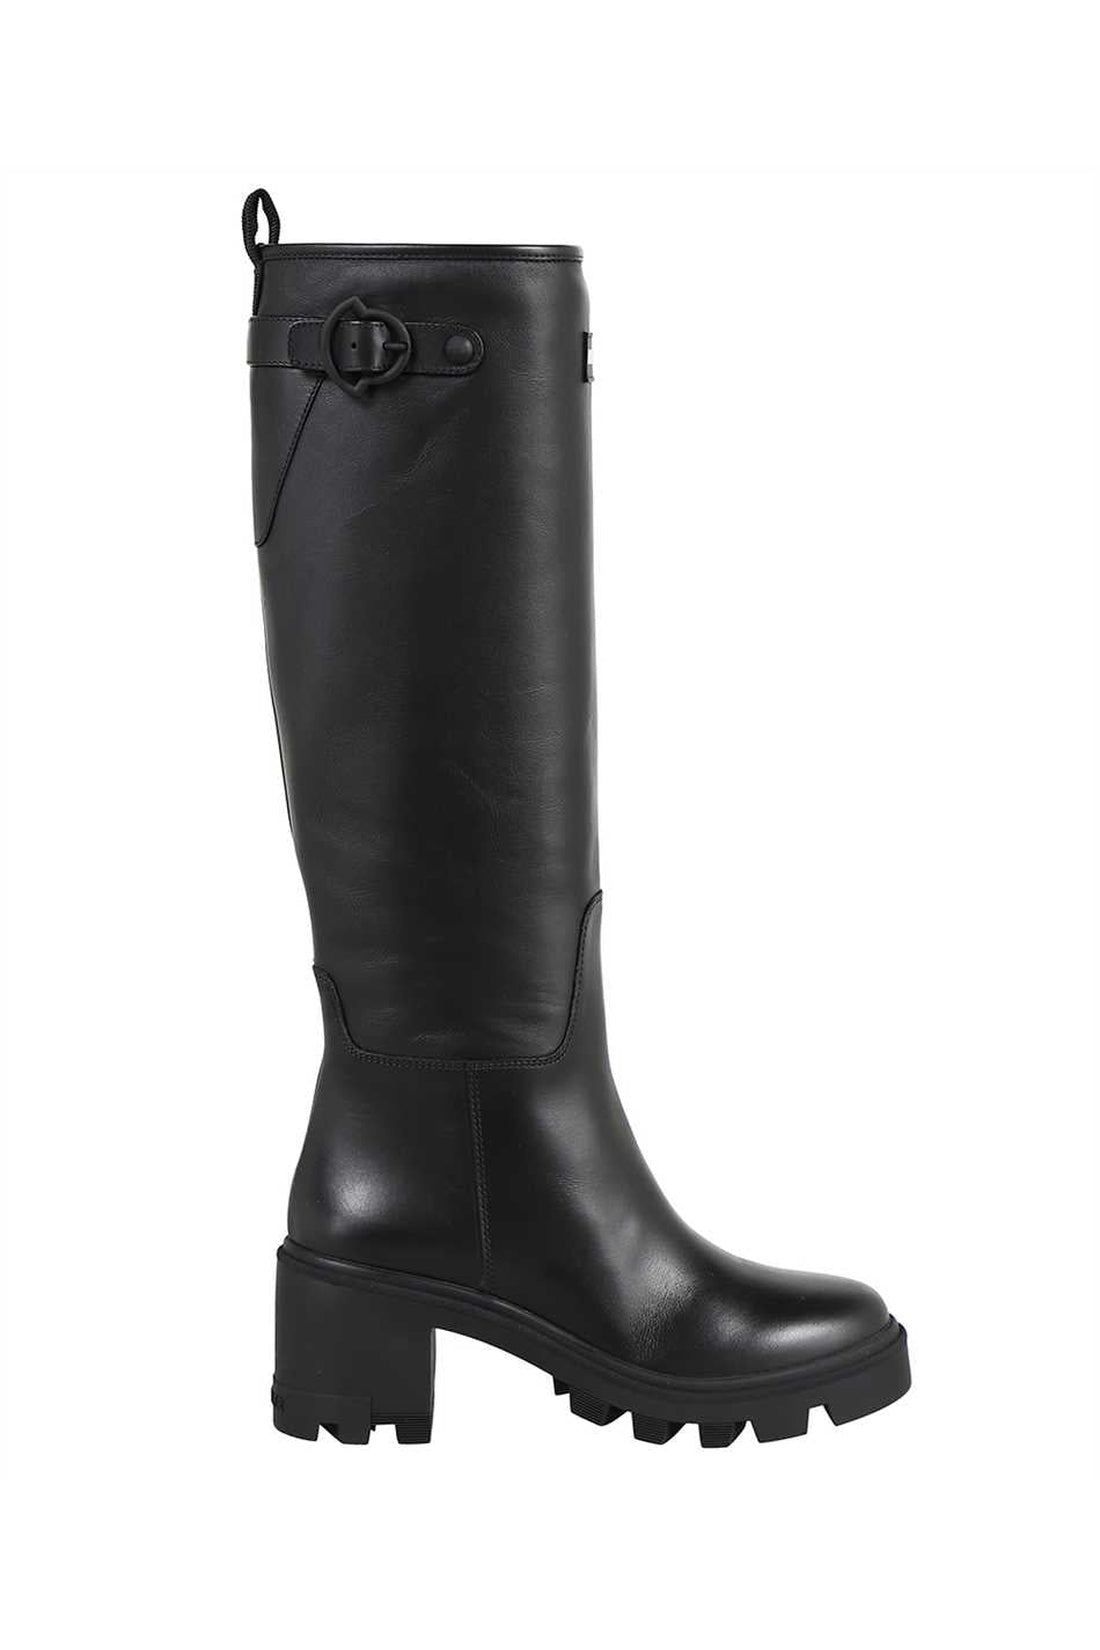 Moncler-OUTLET-SALE-Leather boots-ARCHIVIST